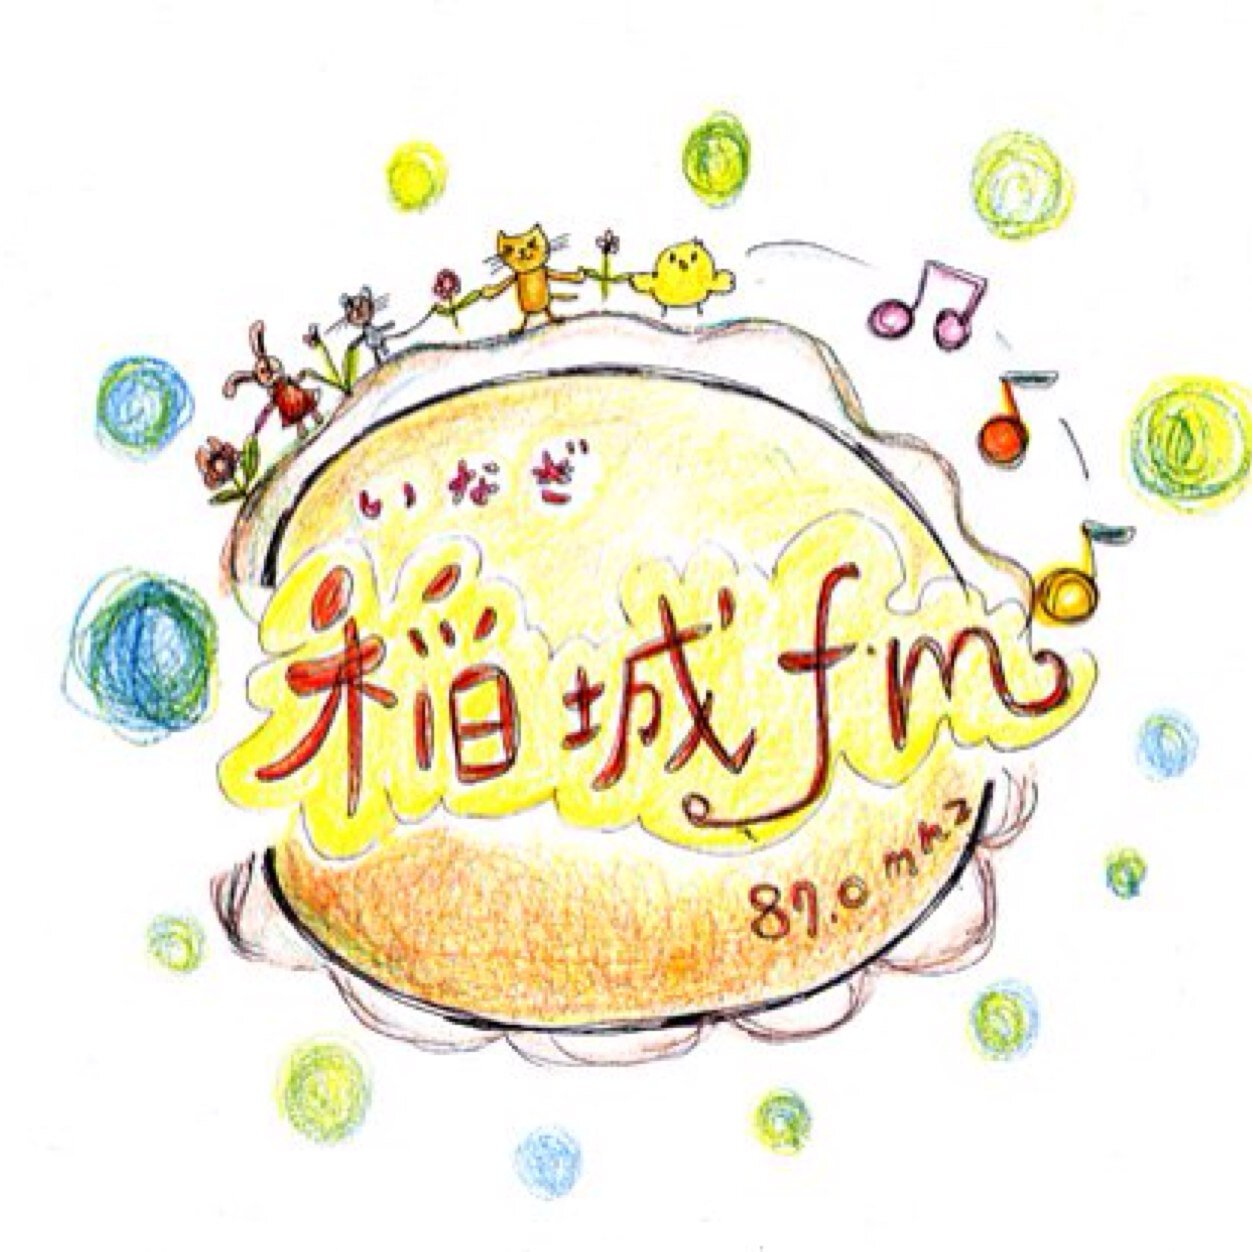 4月16日(水)、稲城市のコミュニティFMを先駆けてミニFM、「稲城FM」がgreen World cafeでスタート！地域の魅力を配信していきます。
YouTubeチャンネルhttps://t.co/NpcAUsmUeZ
お便りお問い合わせはこちらまで
inagifm@gmail.com